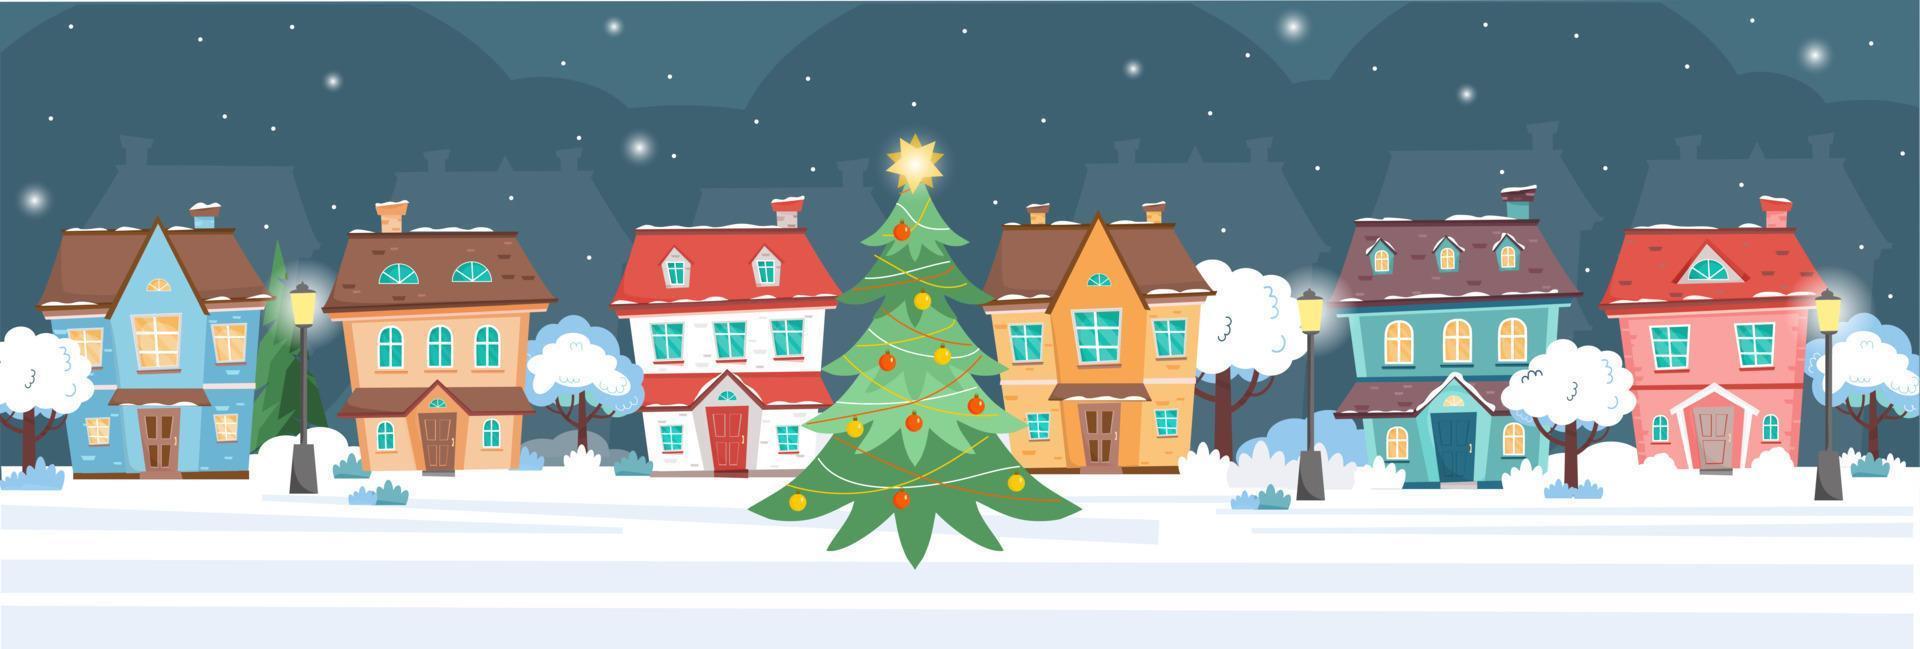 horisontell baner med söt hus på vinter- snö natt. stugor, träd, gata lampor, jul träd på jul natt. vinter- stad på natt. vektor